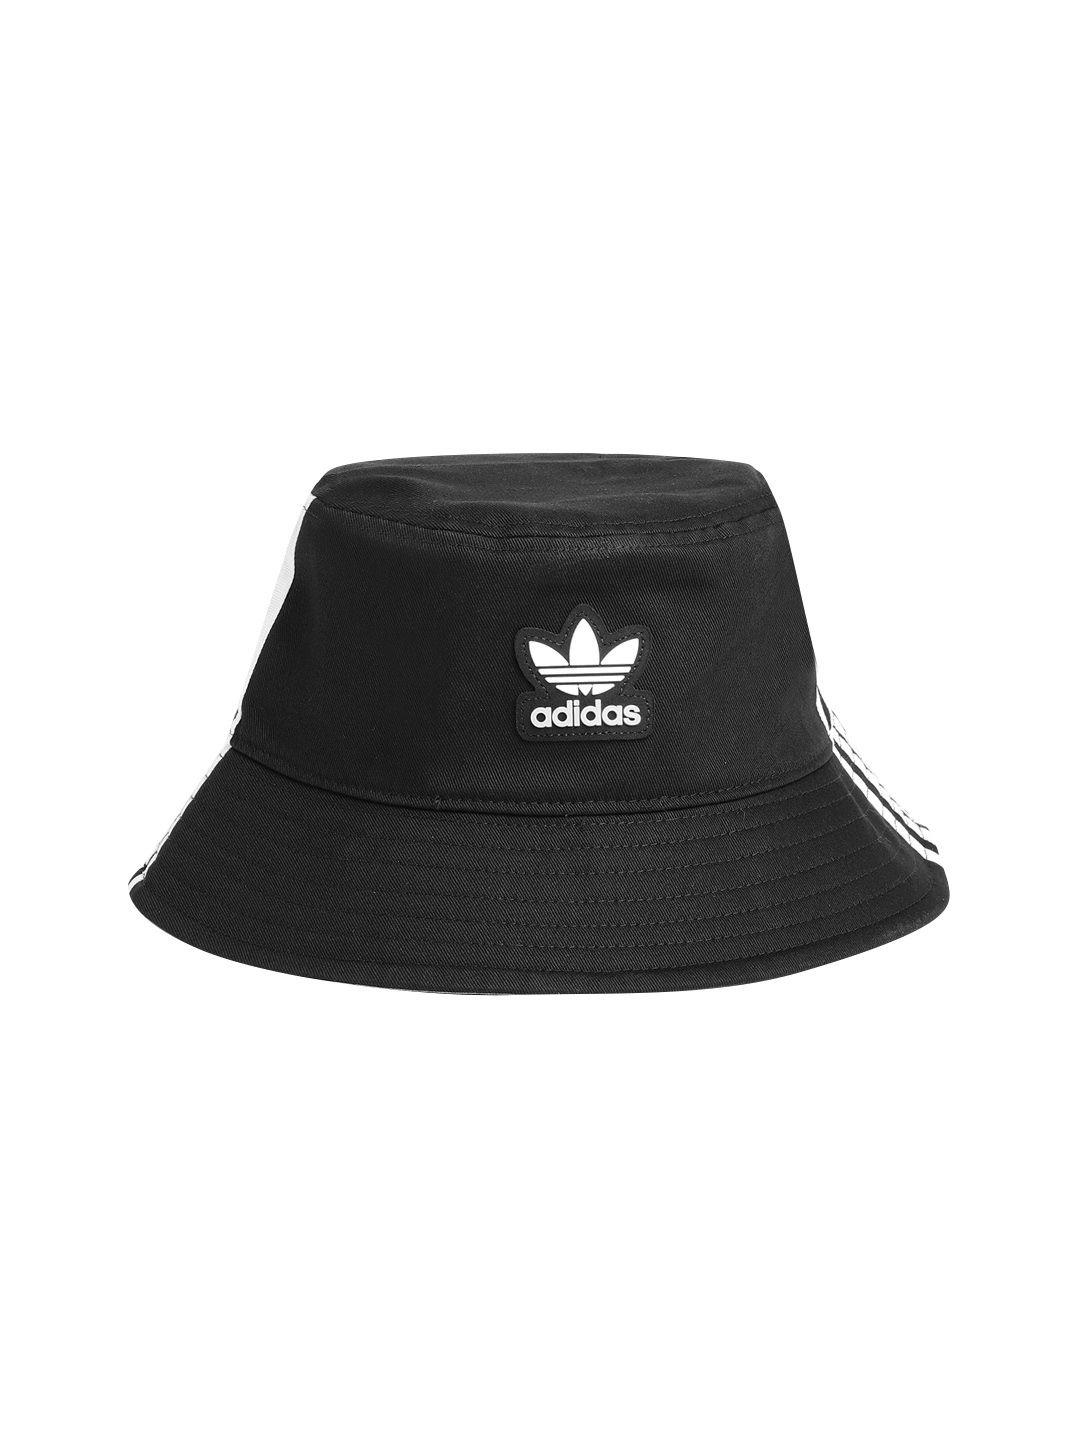 adidas originals unisex cotton brand logo detail bucket hat